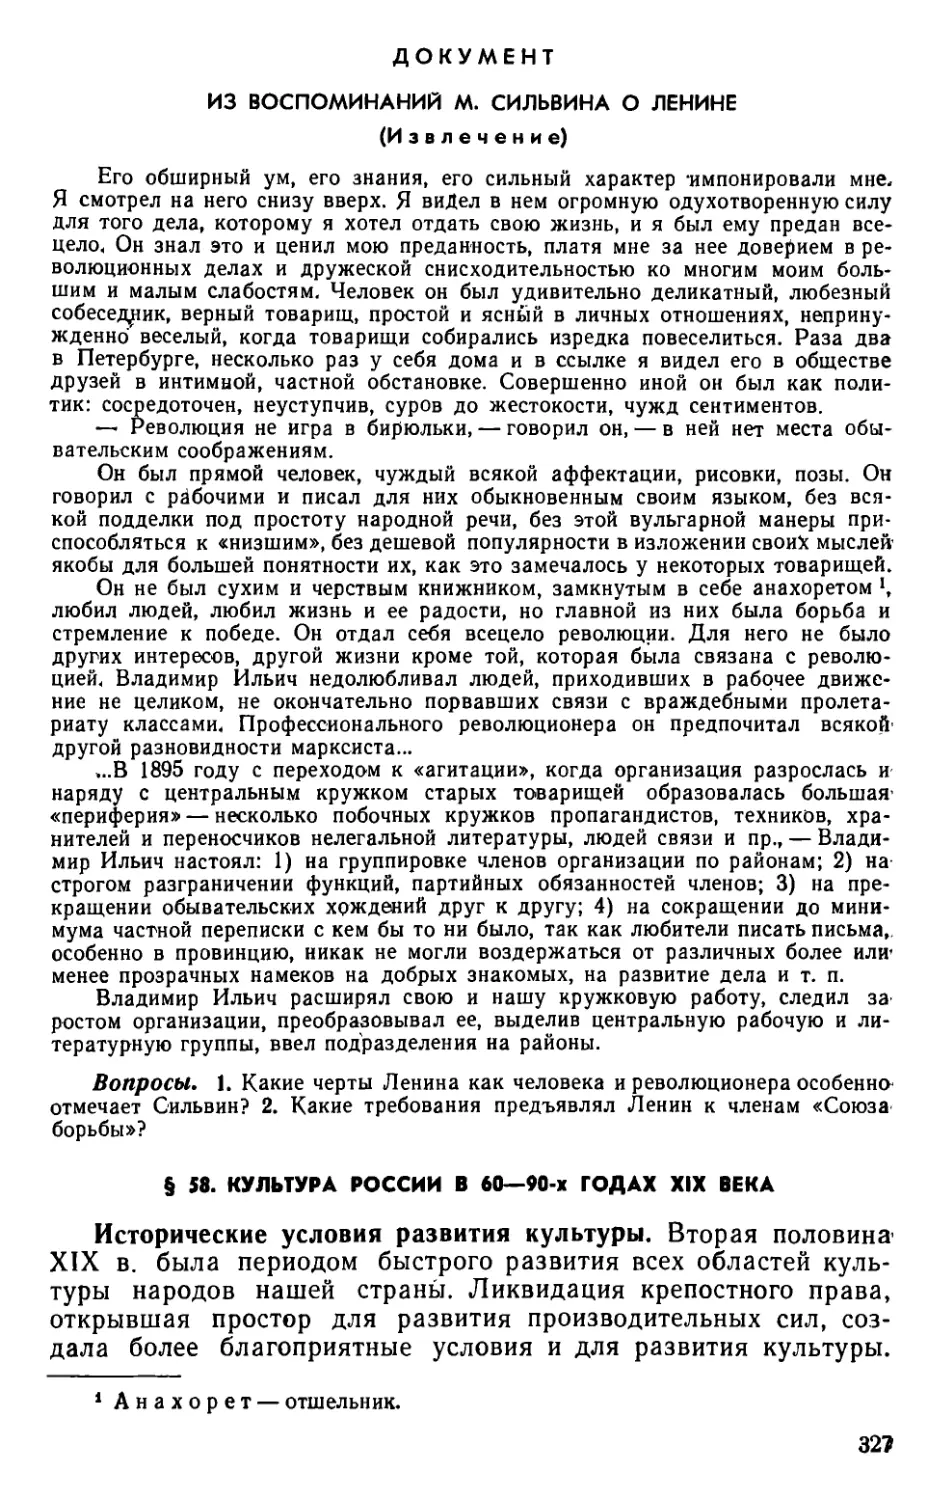 § 58. Культура России в 60—90-х годах XIX века